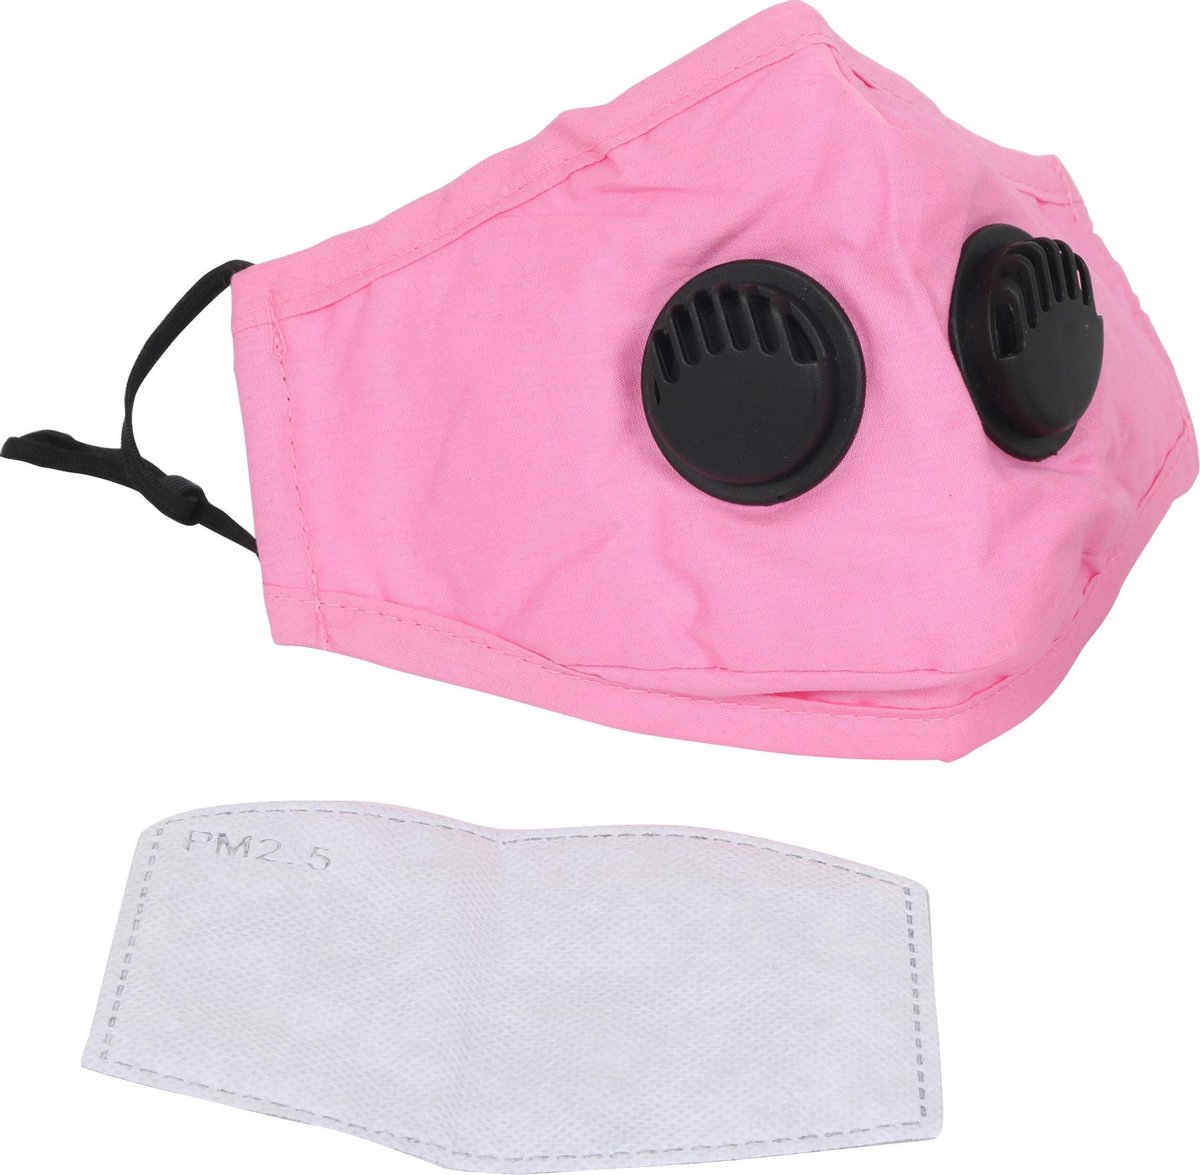 FASHIONMASK - Mondkapje Wasbaar Herbruikbaar Mondmasker Met Ventiel en 1 vervangbare PM2.5 Filter - Katoenen Mondmasker met ventiel en filter - ijzeren neusbeugel - Mouth Mask - Stoffen Mond masker - Herbruikbaar Mond Kapje - Roze (Hot Pink) - Fashion Mask